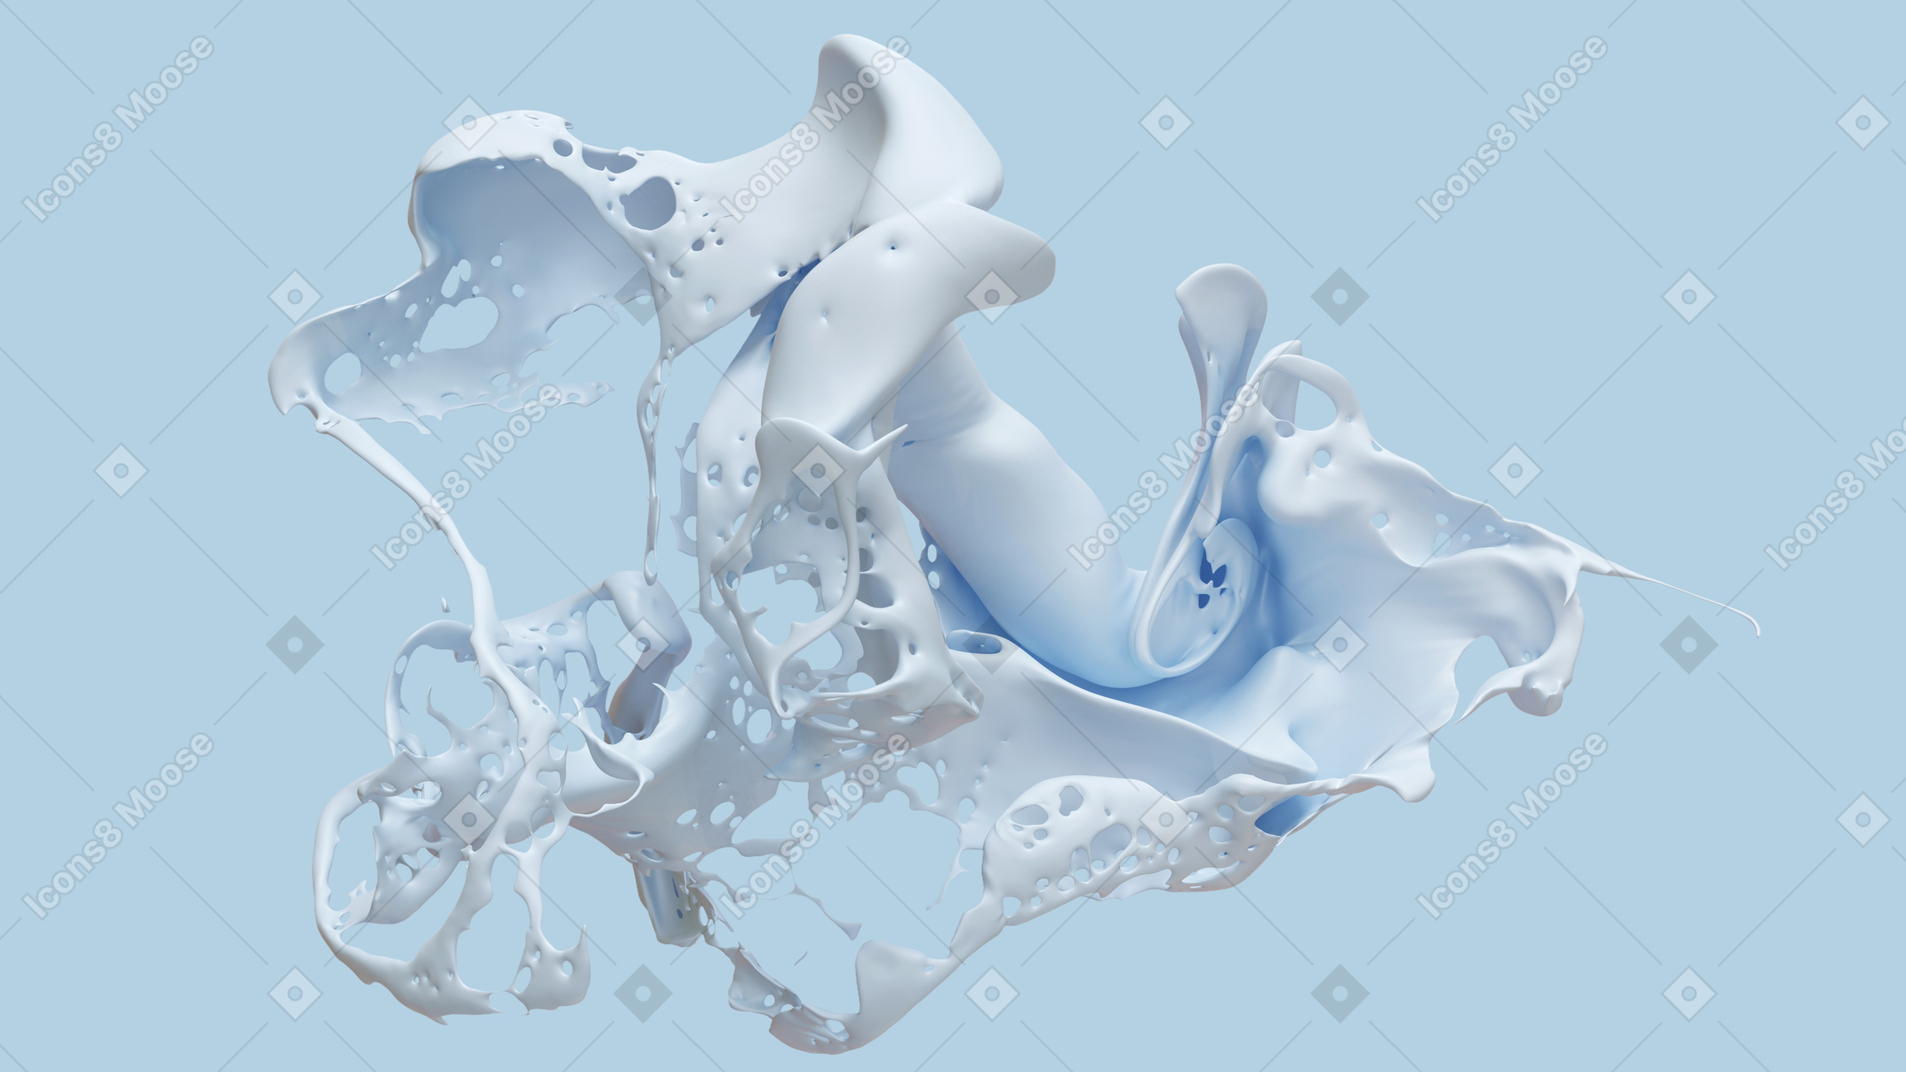 Splash of blue liquid